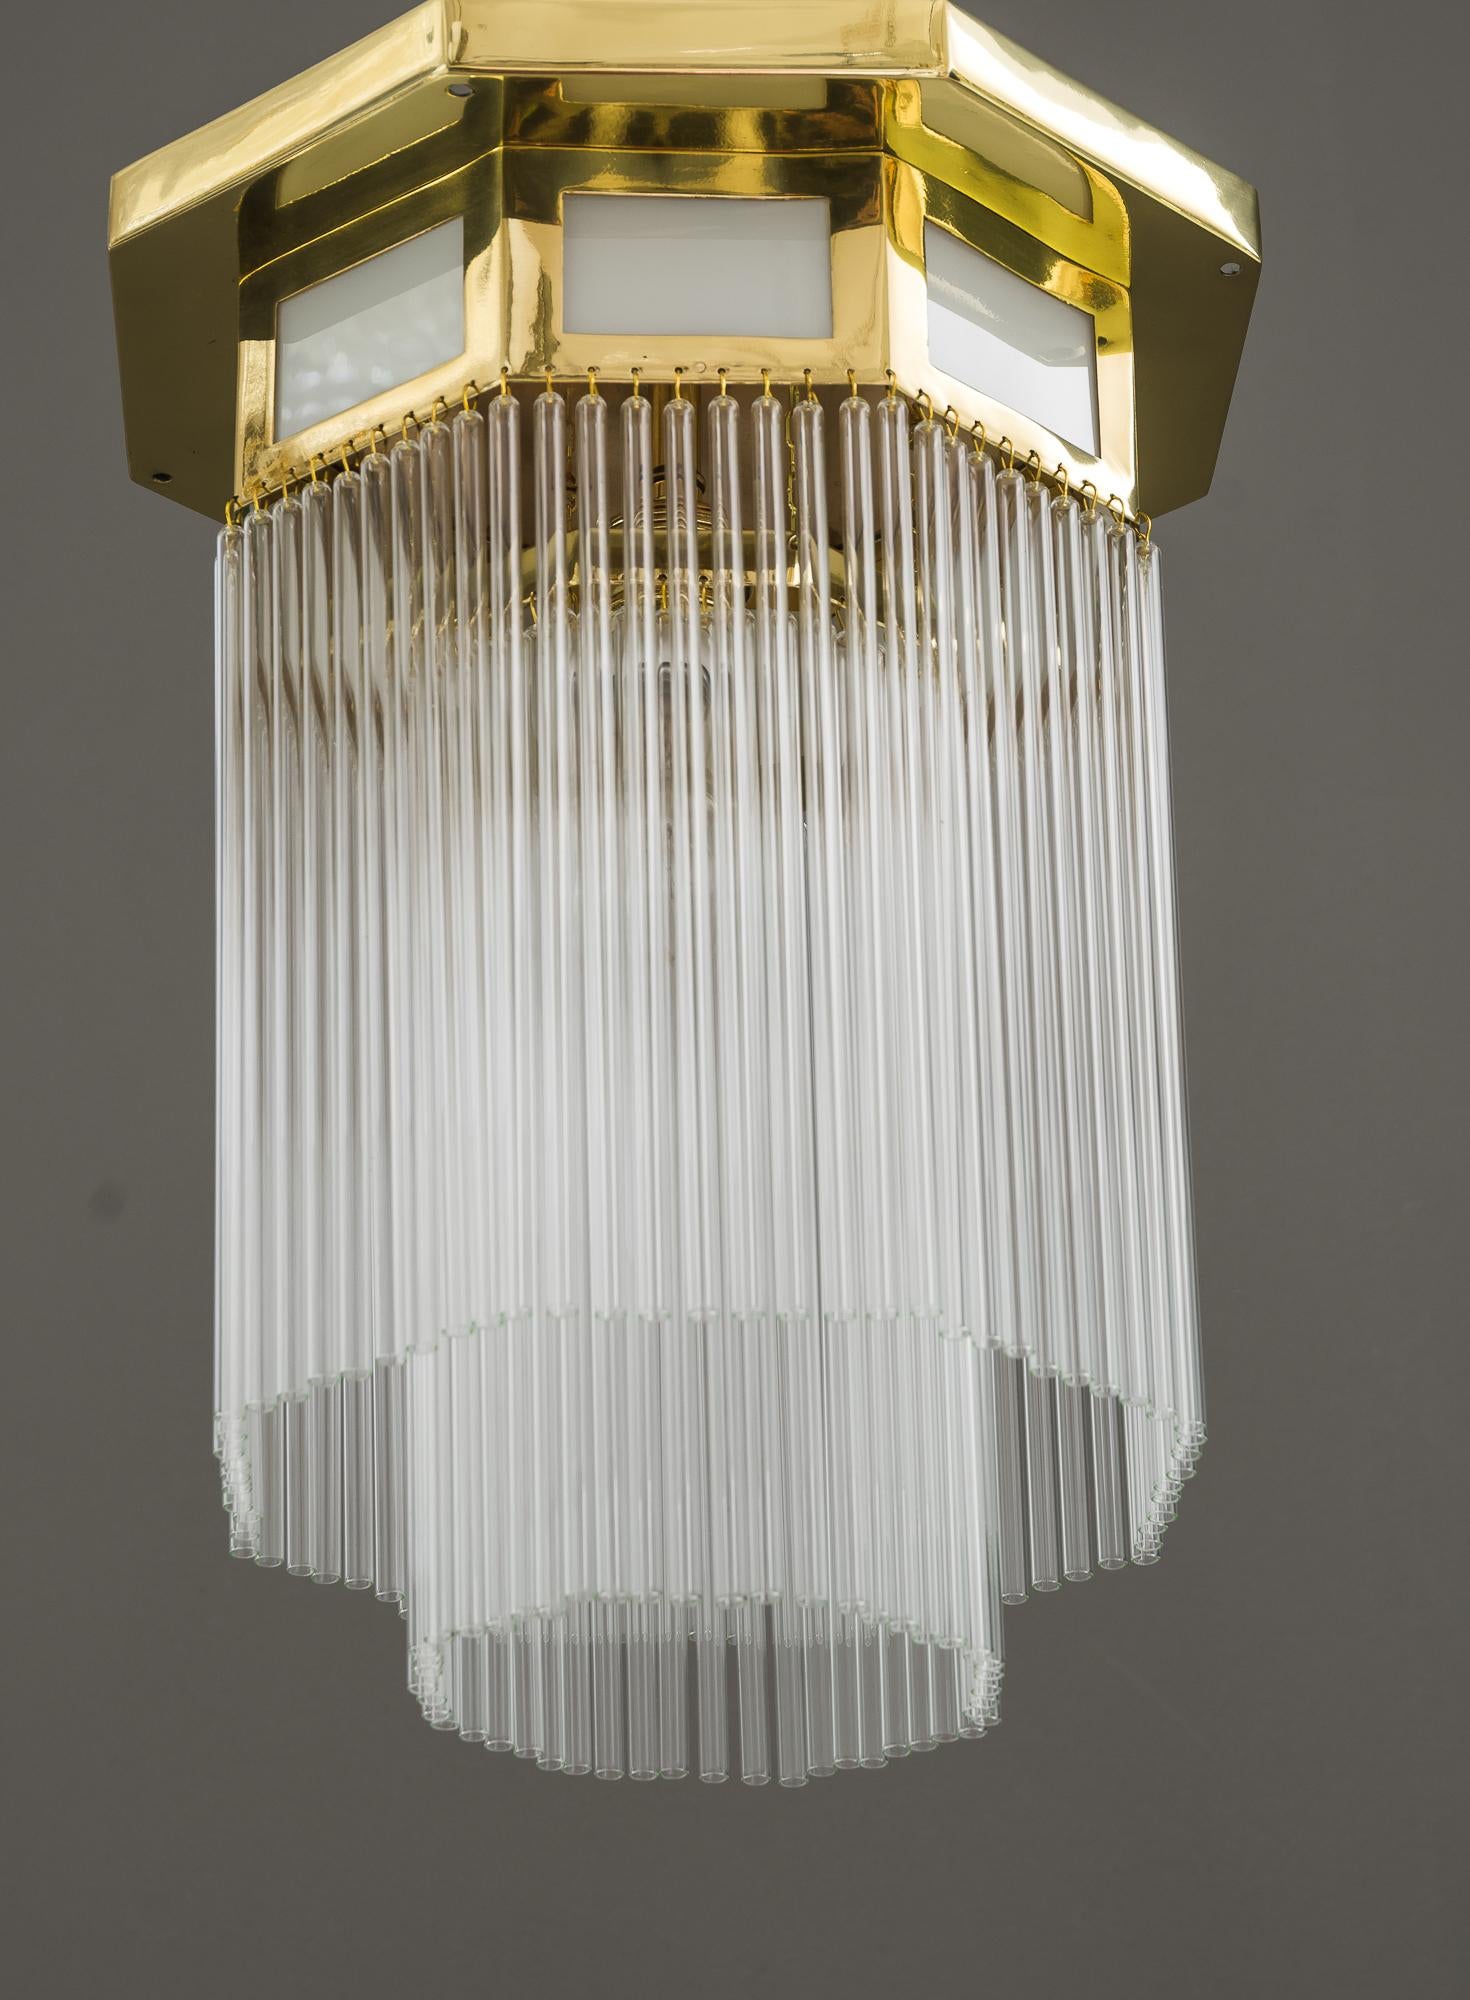 Art Deco Deckenlampe, Wien, um 1920
Messing poliert und emailliert
Opalgläser im Messingrahmen
Die Glasstäbe werden ausgetauscht (neu).